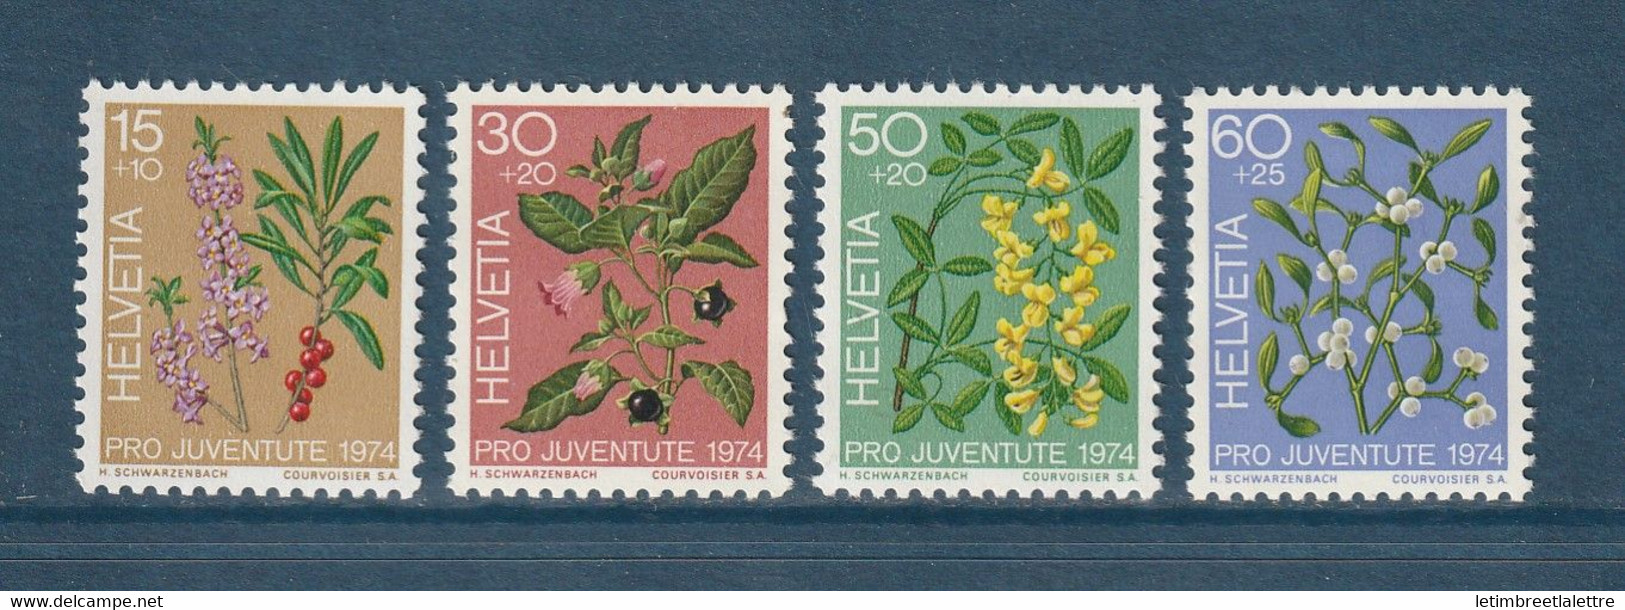 ⭐ Suisse - YT N° 972 à 975 ** - Neuf Sans Charnière - 1974 ⭐ - Unused Stamps